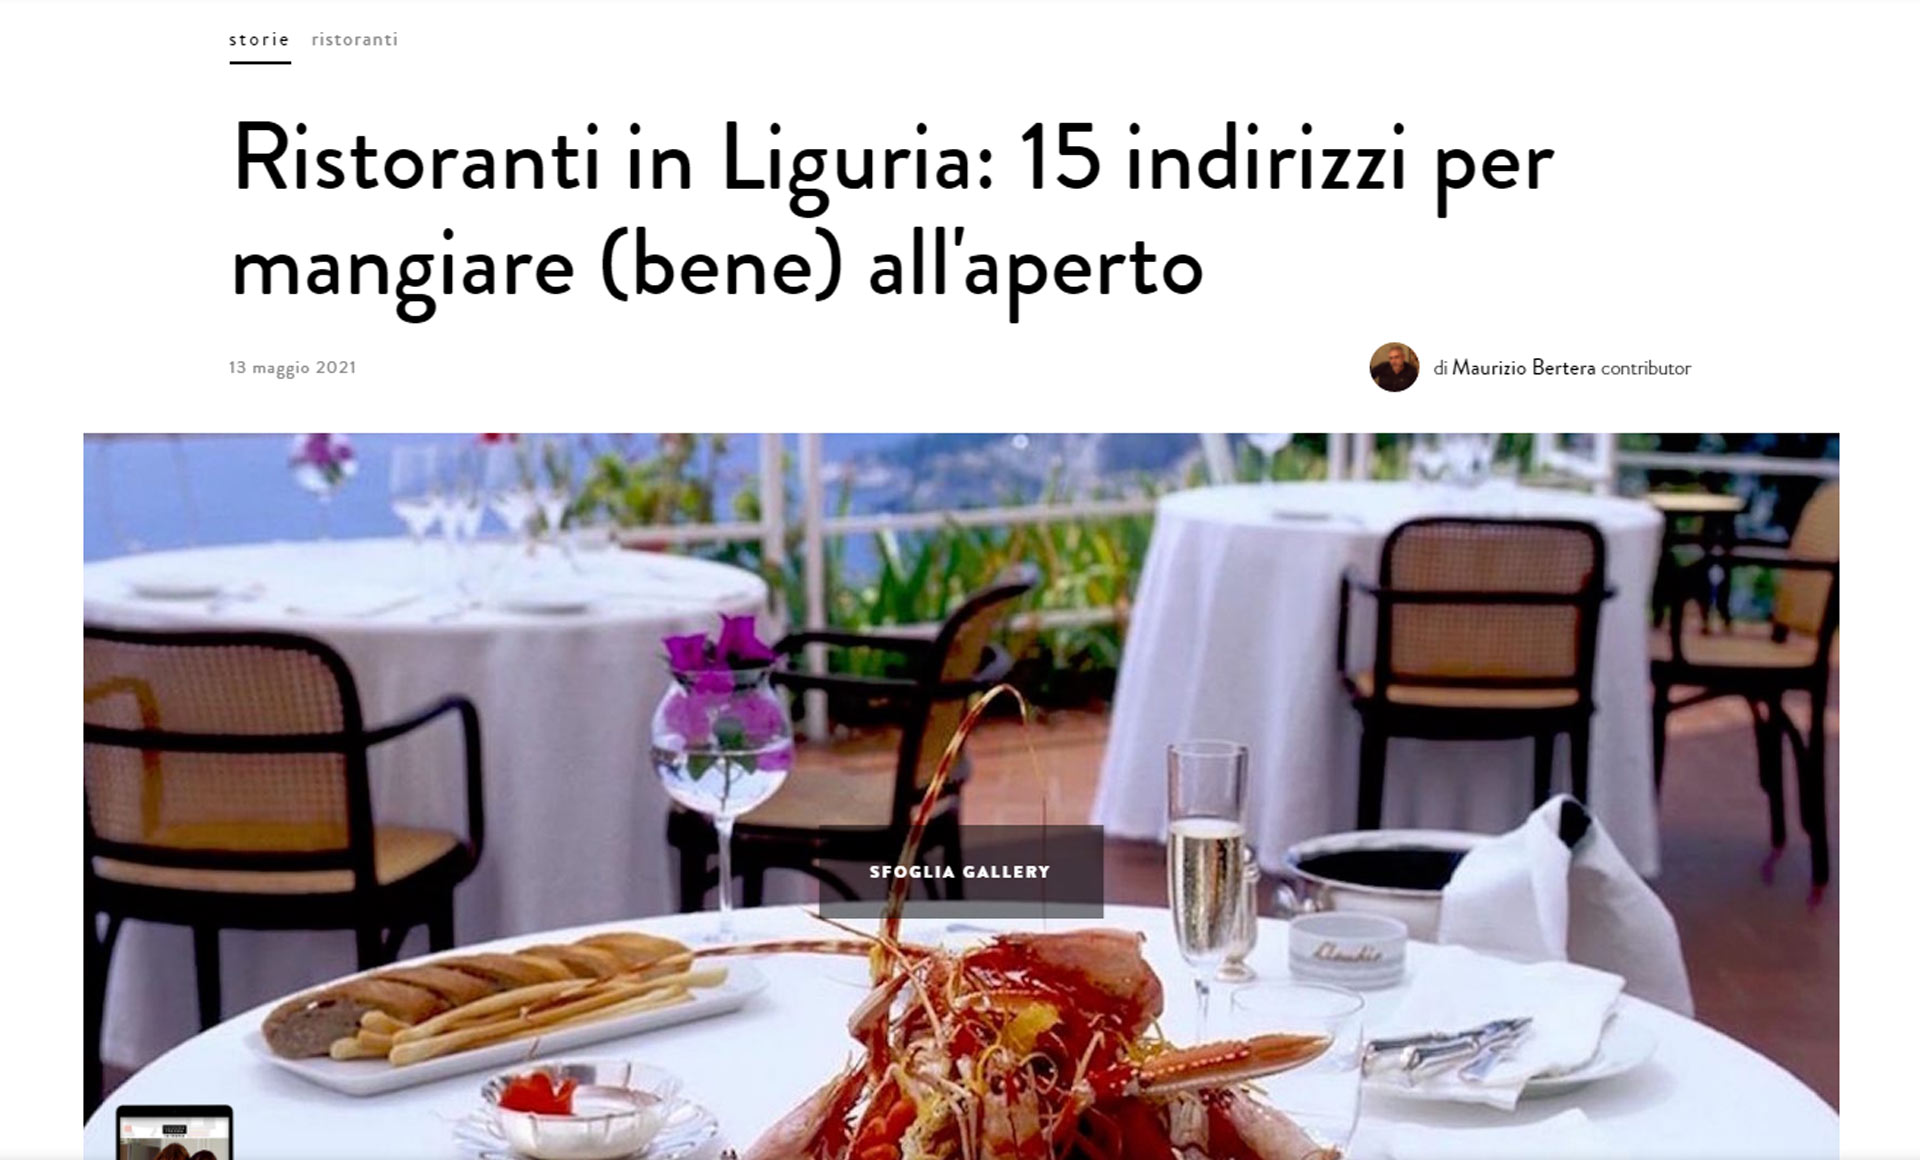 ristoranti-in-liguria-15-indirizzi-per-mangiare-bene-all-aperto-la-cucina-italiana